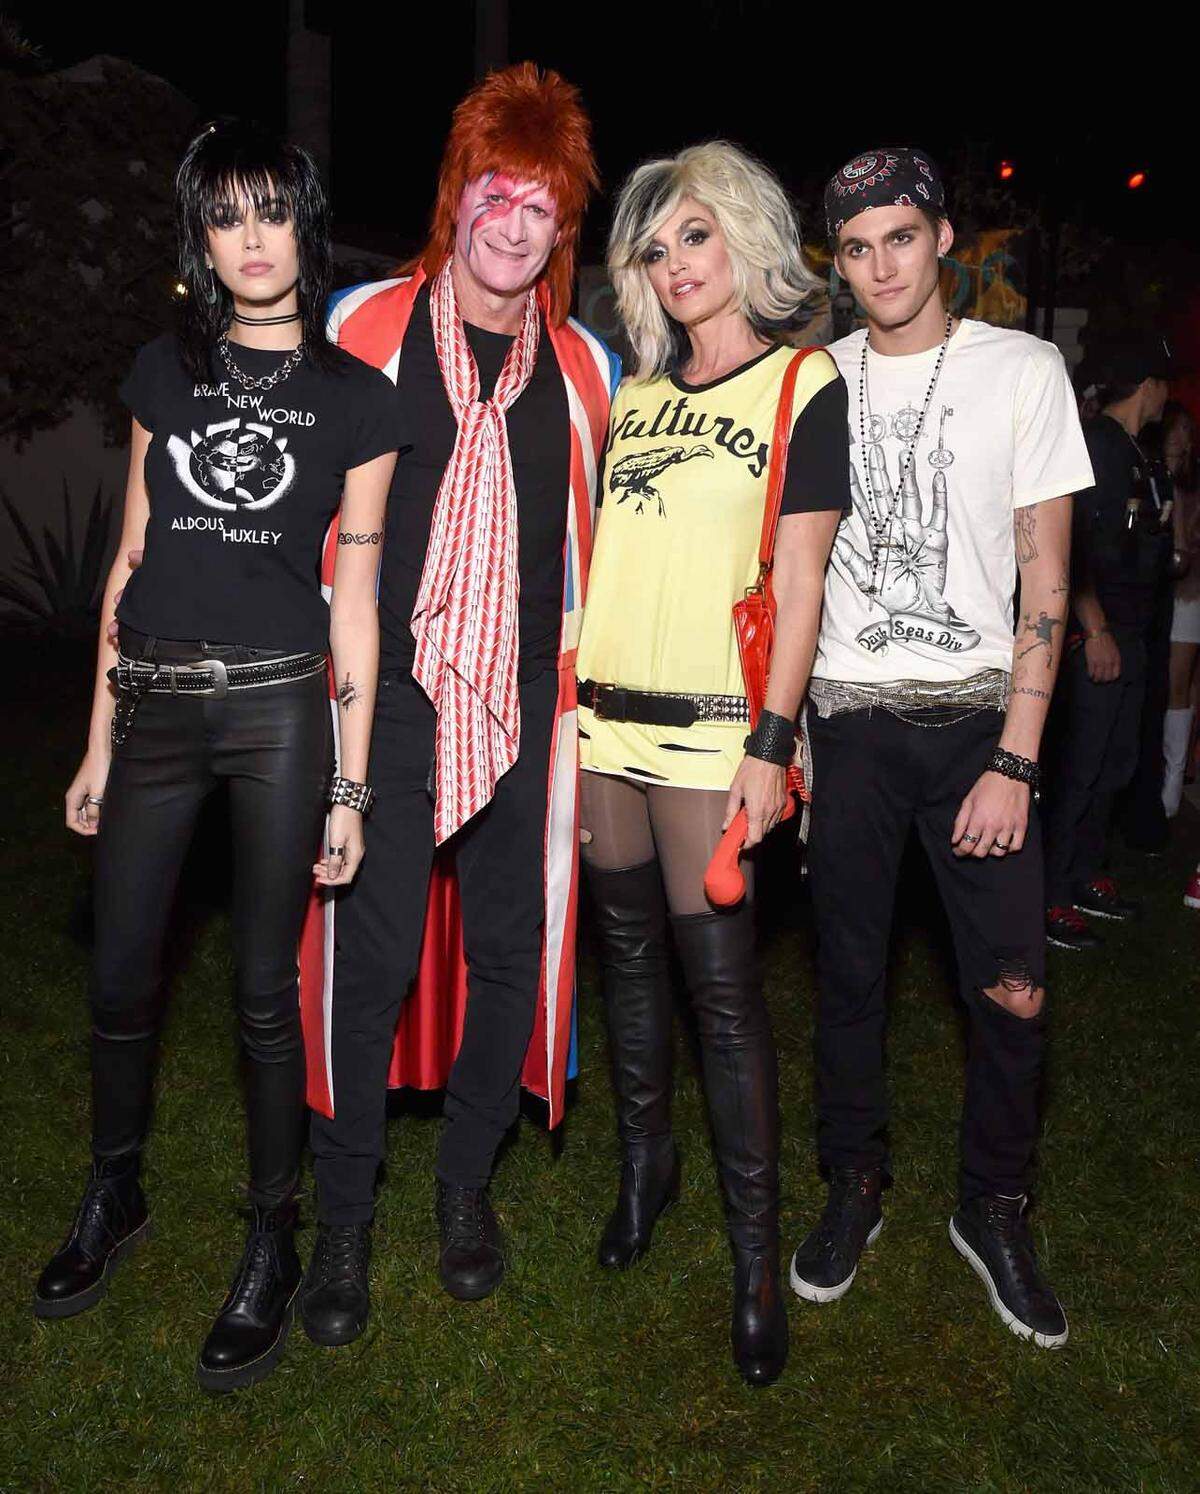 Aber auch Promipartys läuteten die Halloween-Feierlichkeiten ein. Hier sind etwa Kaia Gerber als Joan Jett, Rande Gerber als David Bowie, Cindy Crawford als Blondie und Presley Gerber als Punkrocker zu sehen.